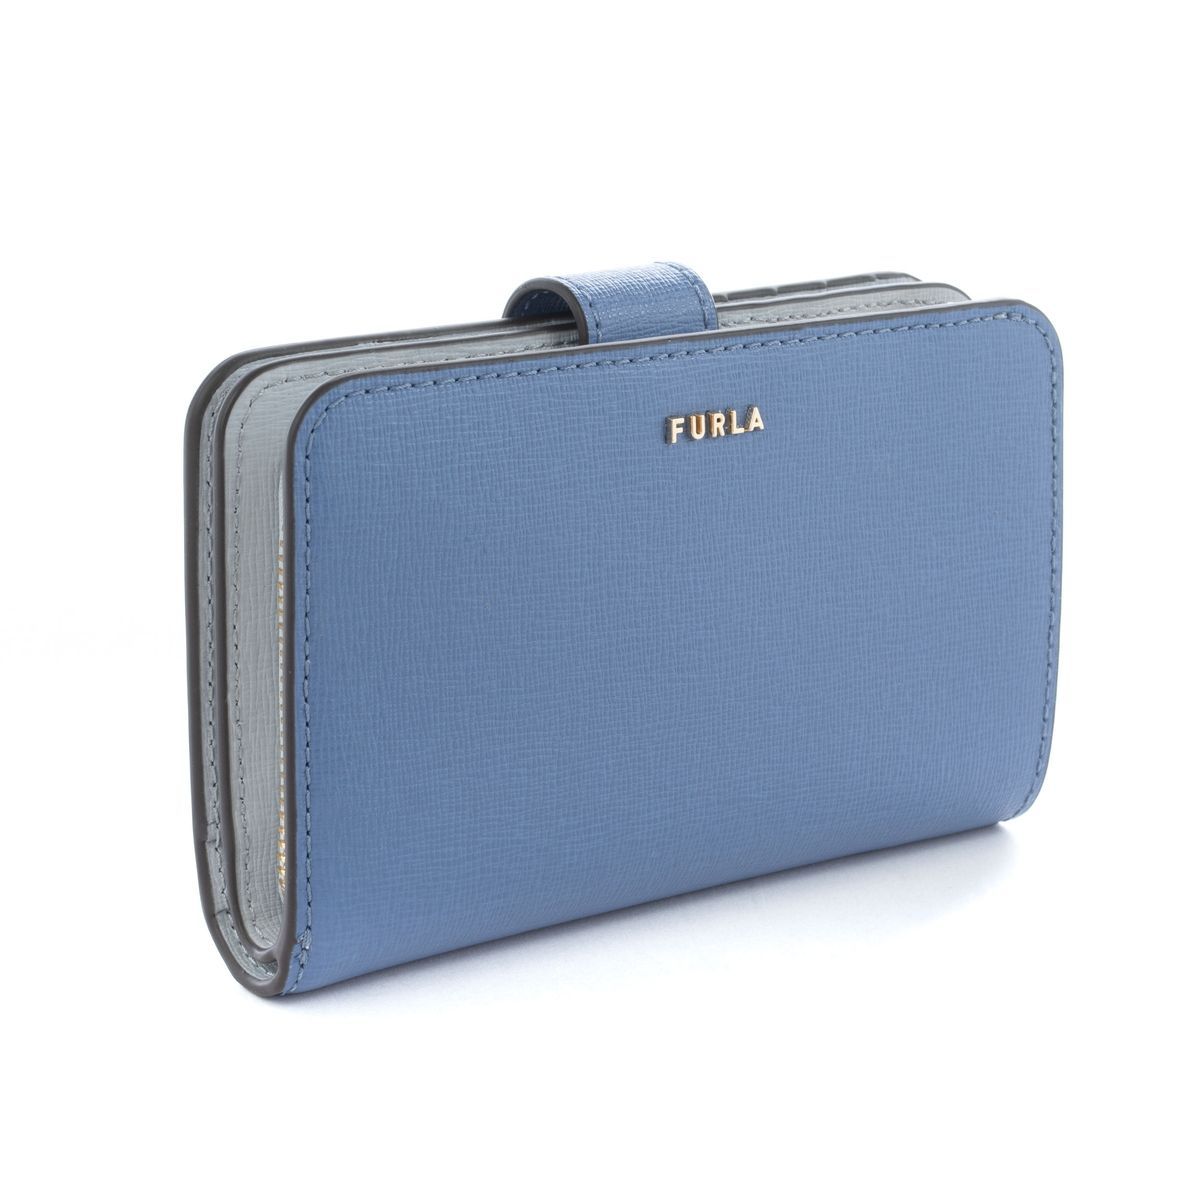 新品箱付 FURLA フルラ コンパクト財布 2つ折り ブルー系 バイカラー